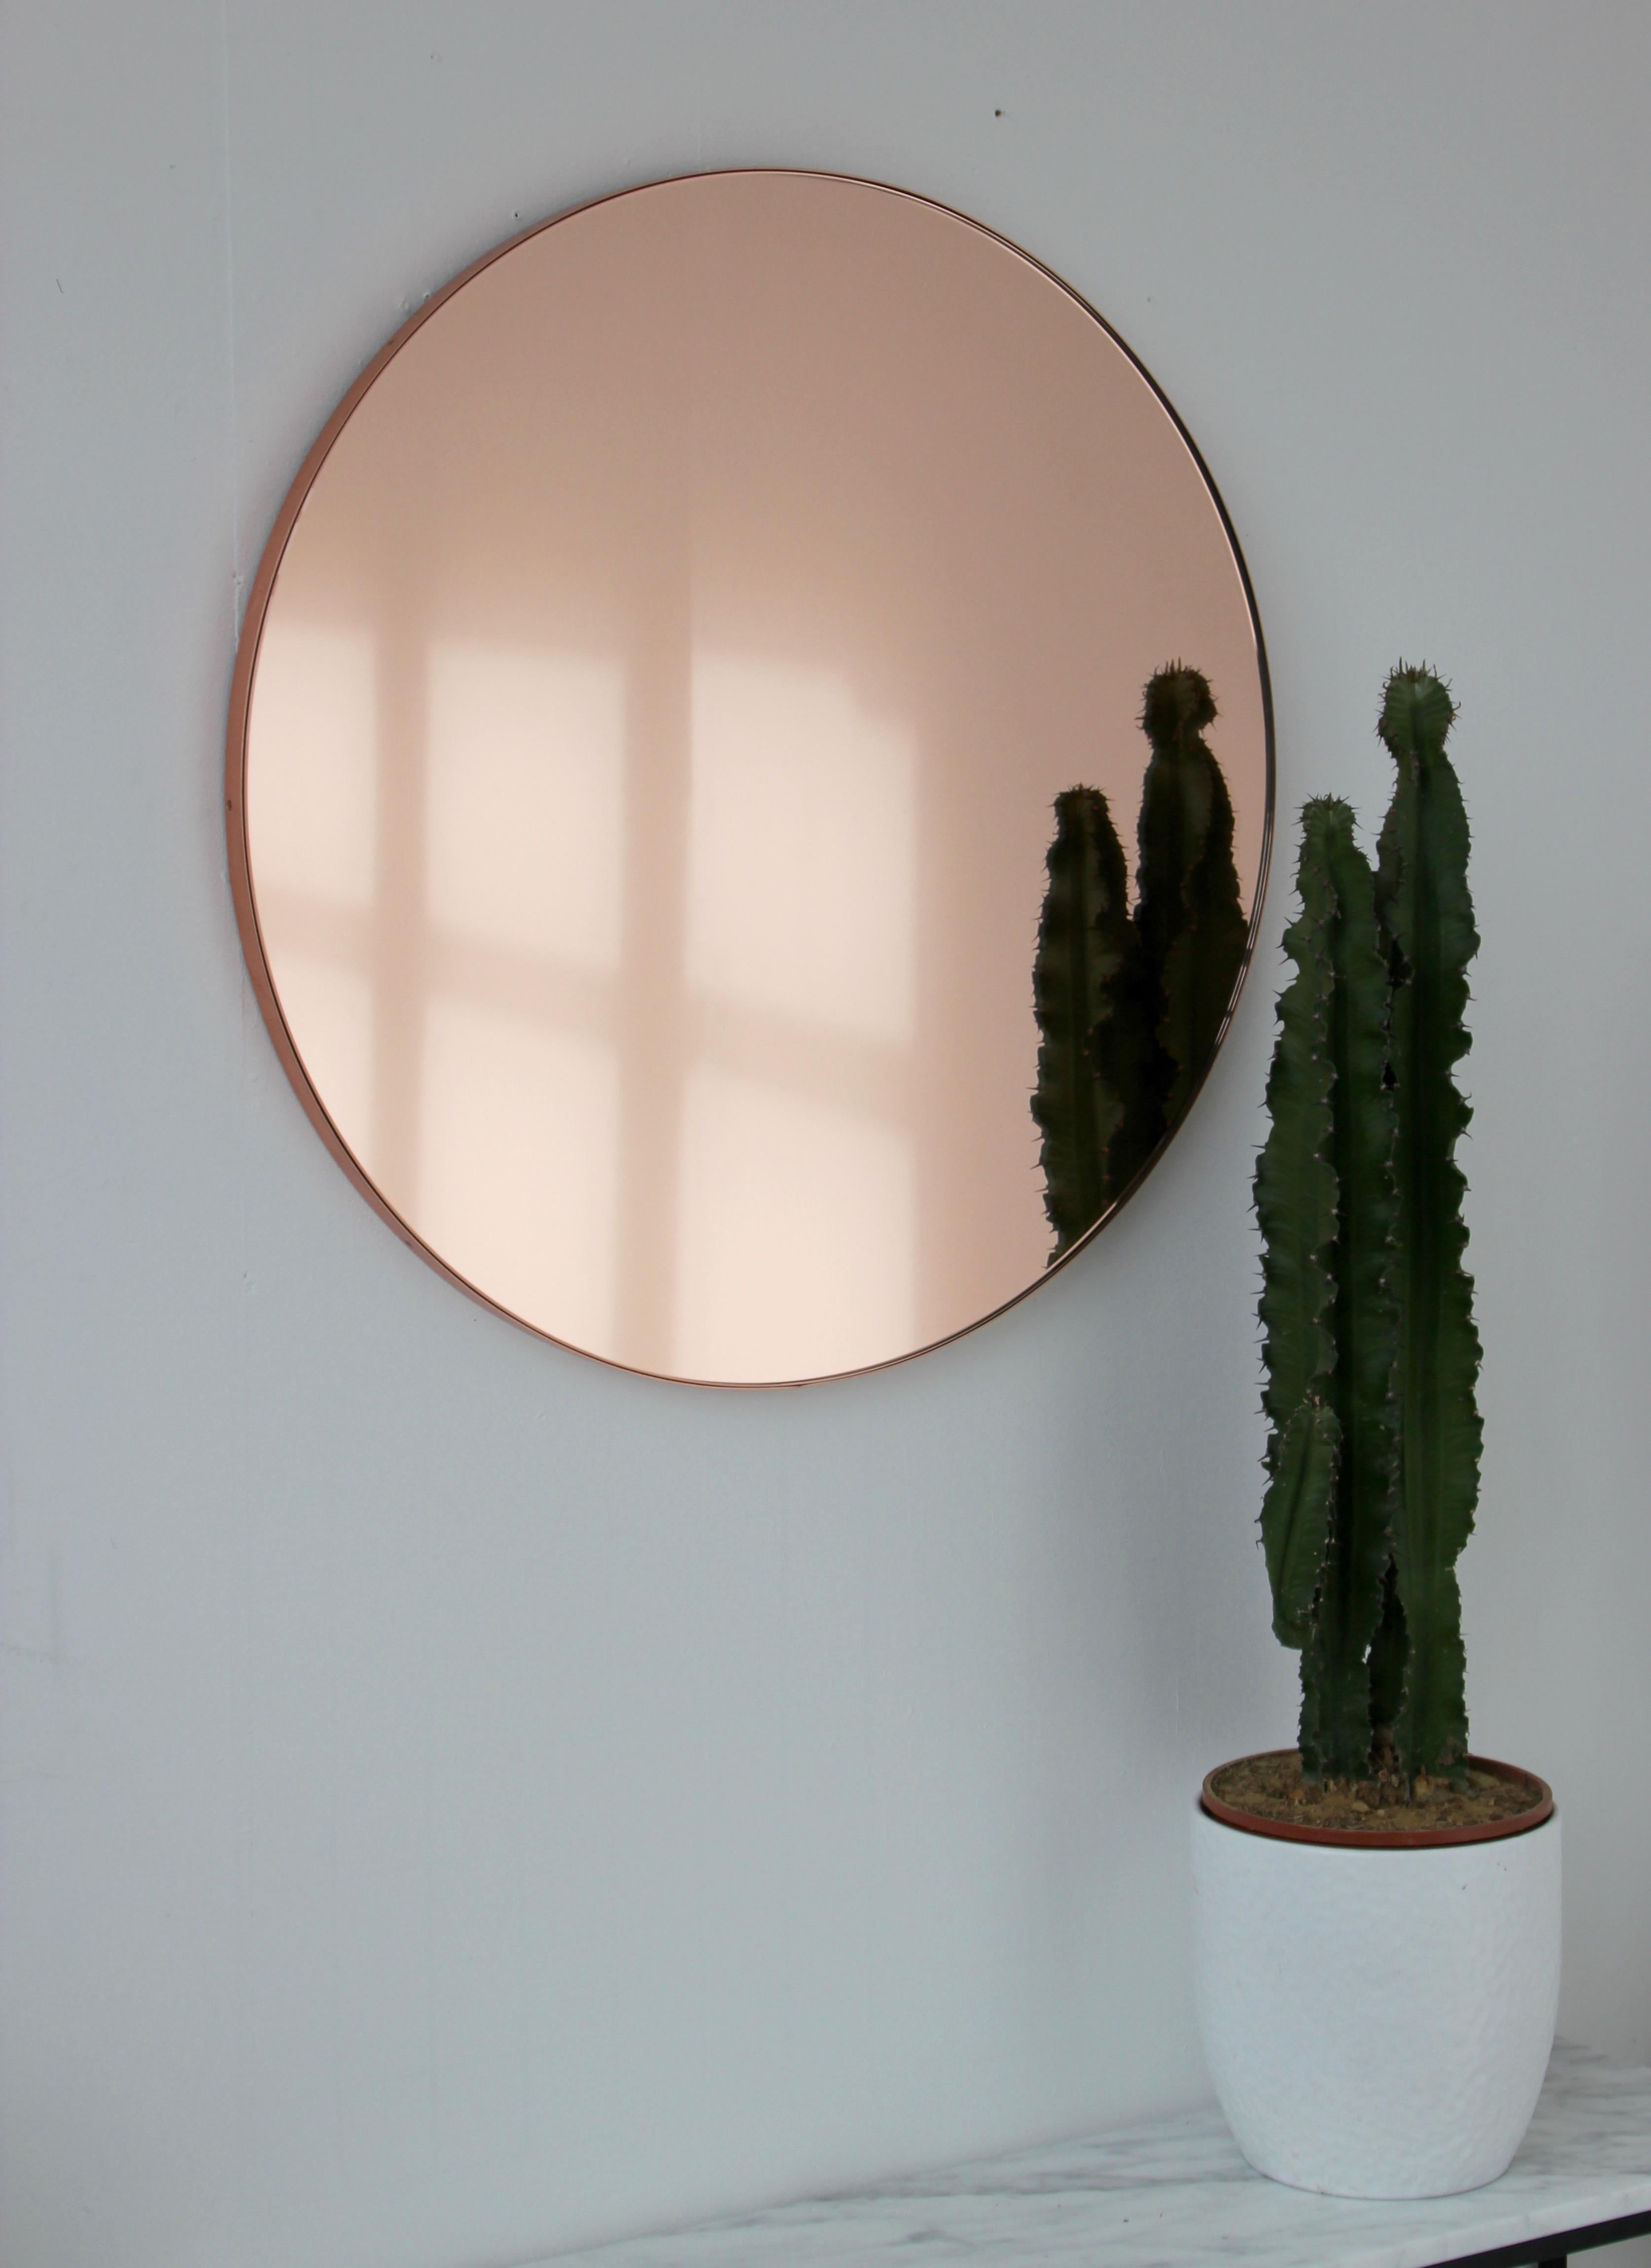 Miroir rond Orbis™ contemporain teinté pêche/or rose avec un cadre en cuivre brossé. Les détails et la finition, y compris les vis cuivrées visibles, soulignent l'aspect artisanal et la qualité du miroir. Conçu et fabriqué à la main à Londres, au